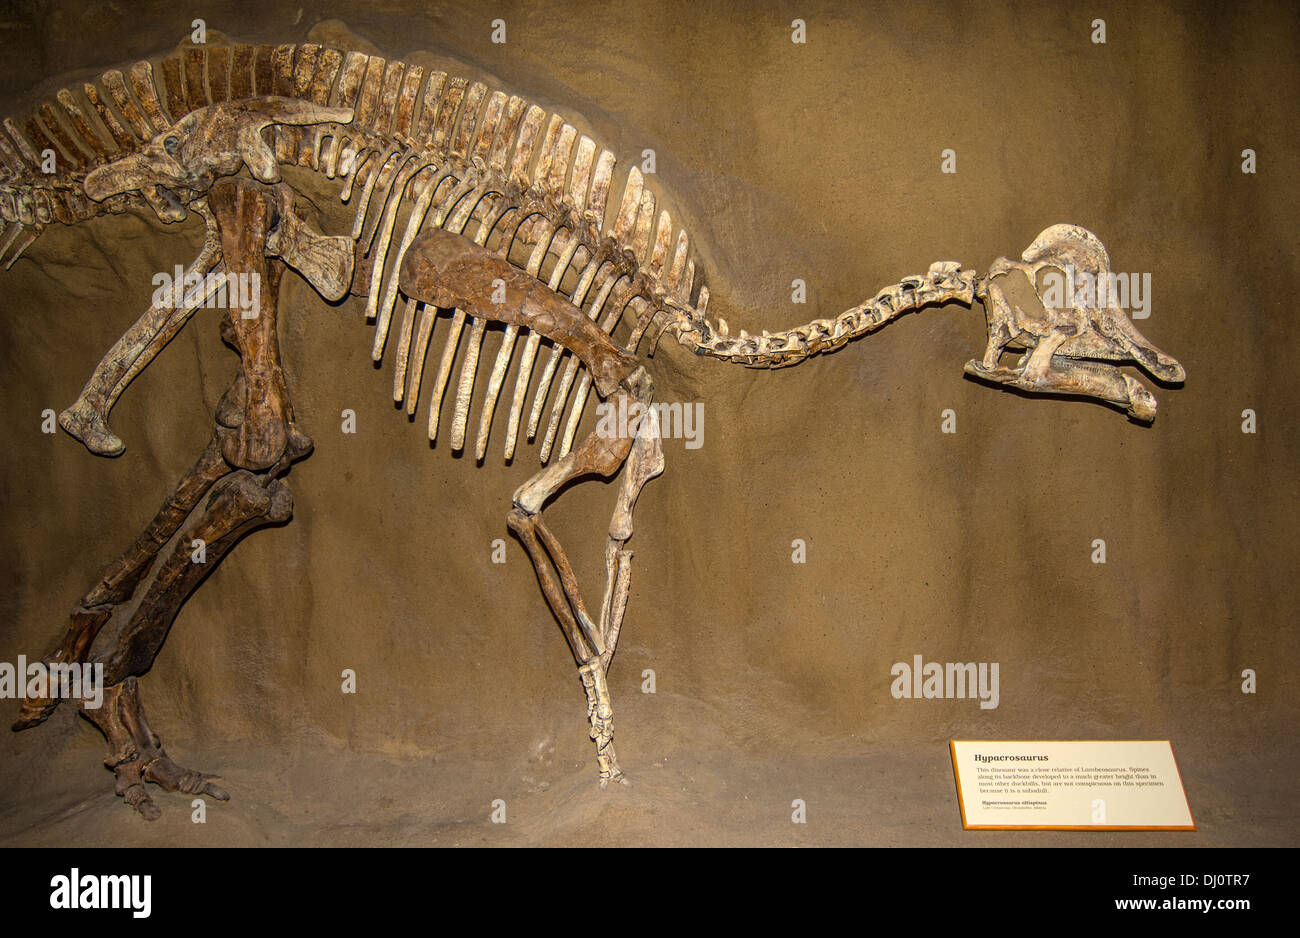 Hypacrosaurus altispirus dinosaurio, sub-adulto. Este dinosaurio era un pariente cercano de Lambeosaurus. Museo del dinosaurio de Blanding Utah Foto de stock